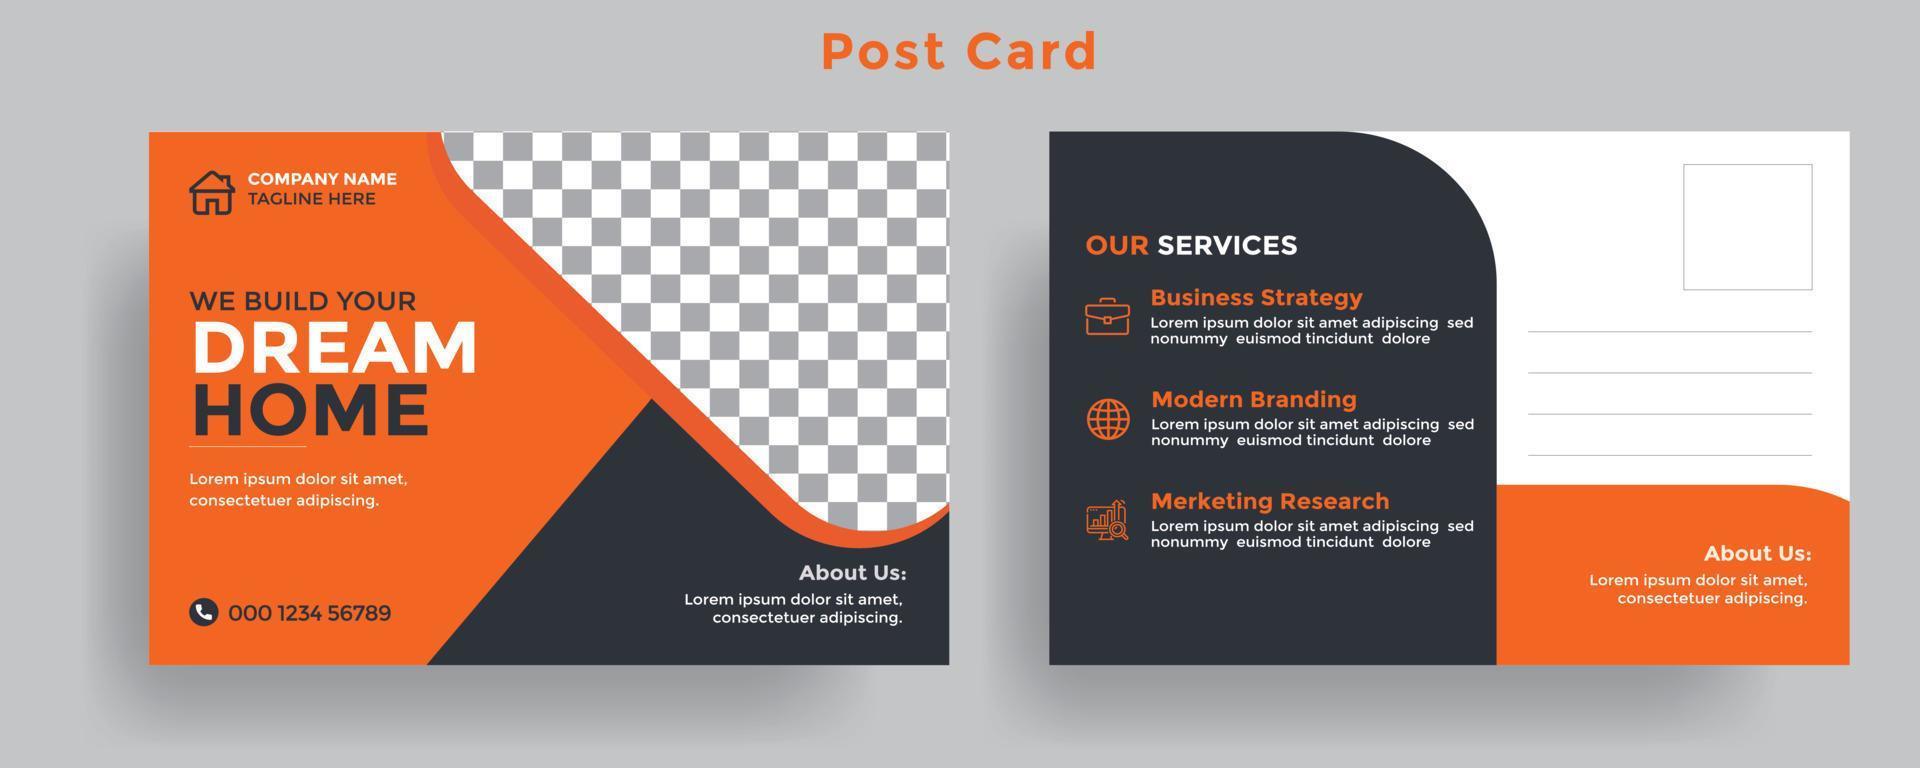 modèle de carte postale eddm immobilier avec couleur orange et noire pour le fichier entièrement modifiable de l'entreprise immobilière. vecteur